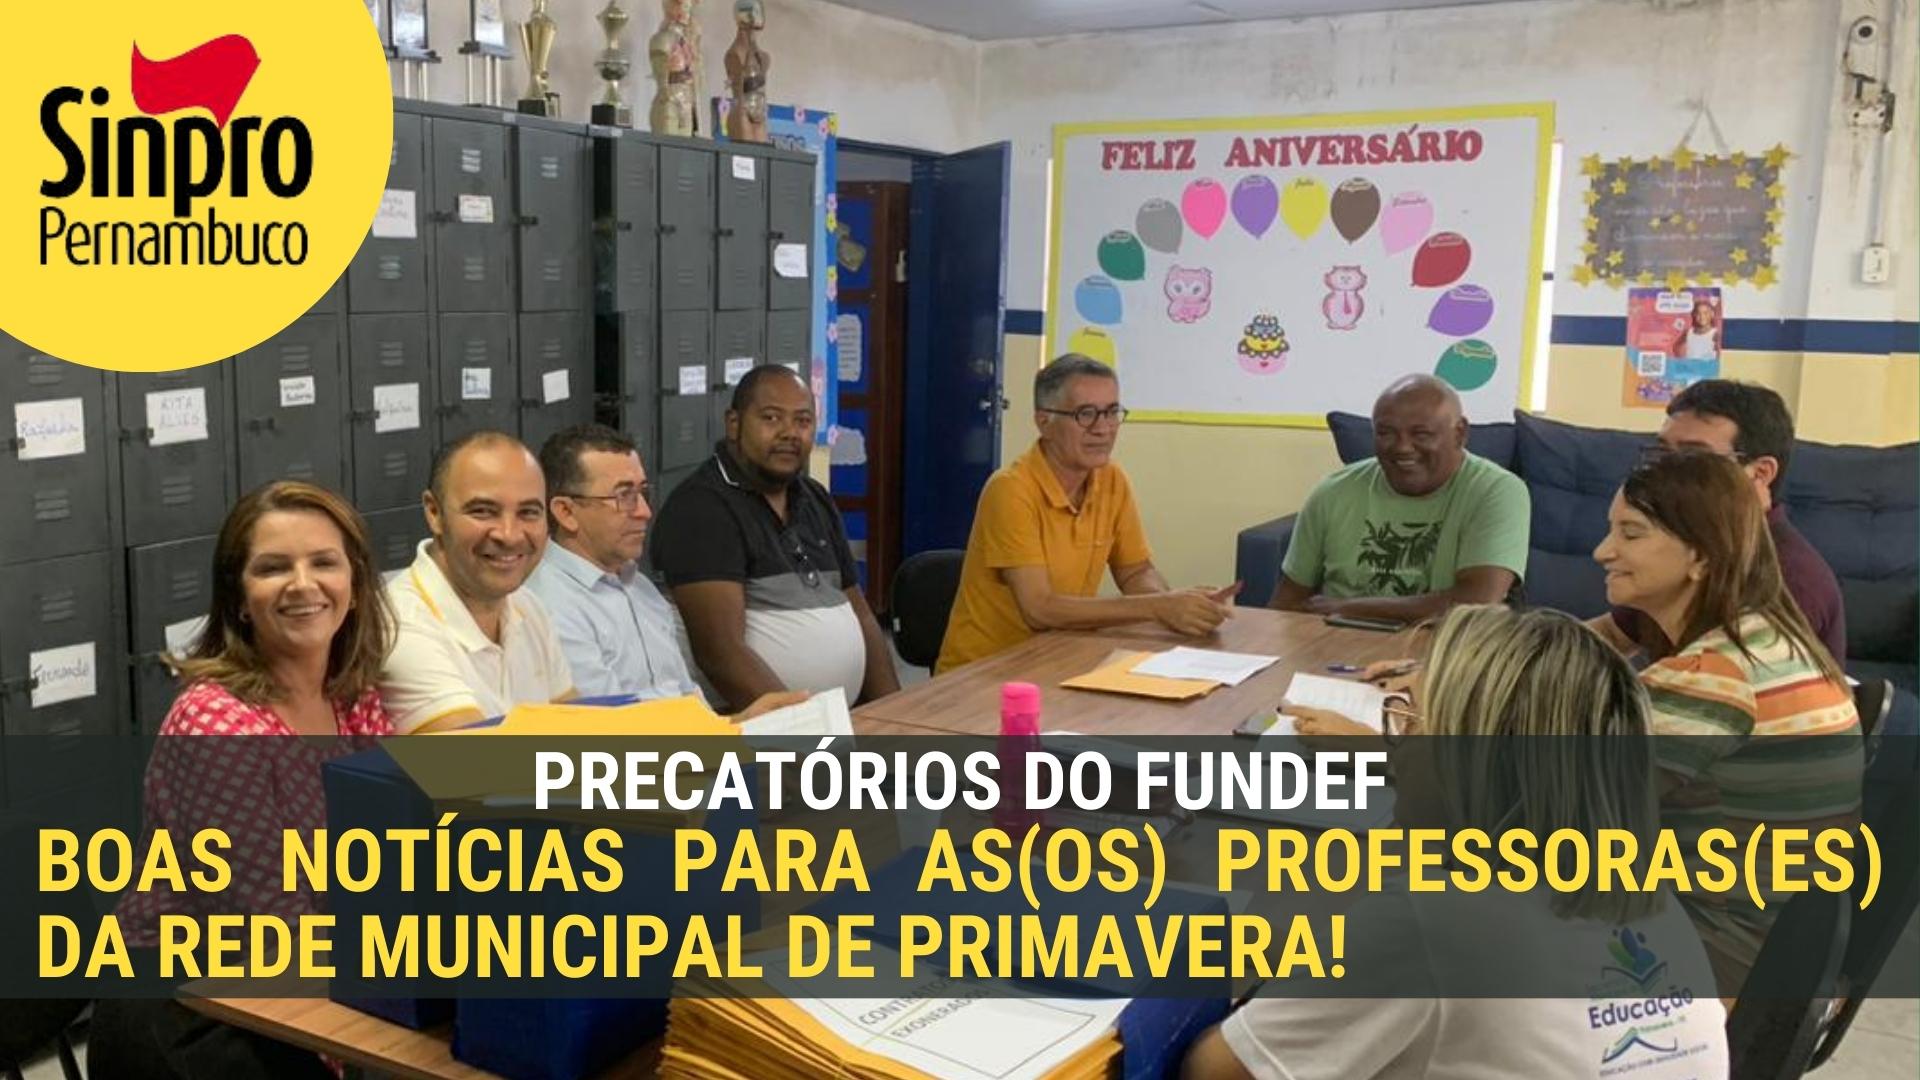 PRECATÓRIOS DO FUNDEF: BOAS NOTÍCIAS PARA AS(OS) PROFESSORES(AS) DE PRIMAVERA!